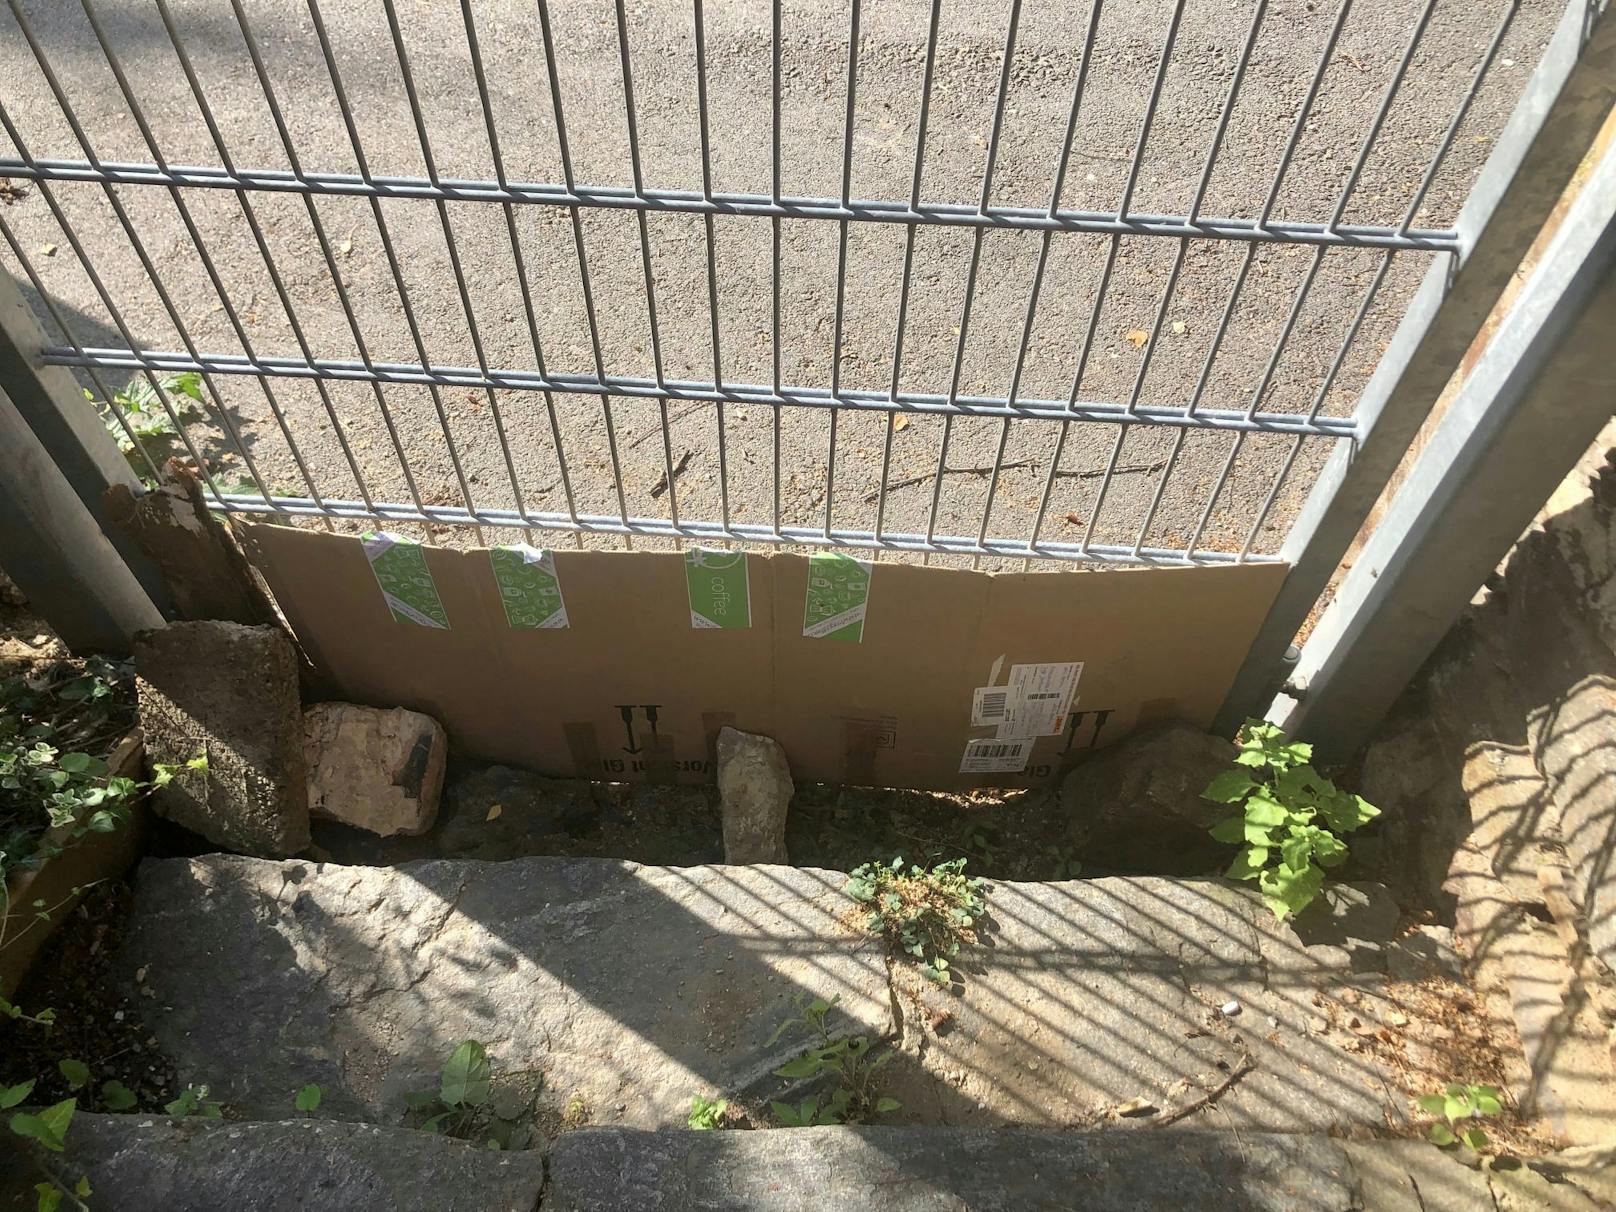 Der Zaun wurde mit einem Karton zugemacht, damit der Igel nicht mehr stecken bleiben kann.